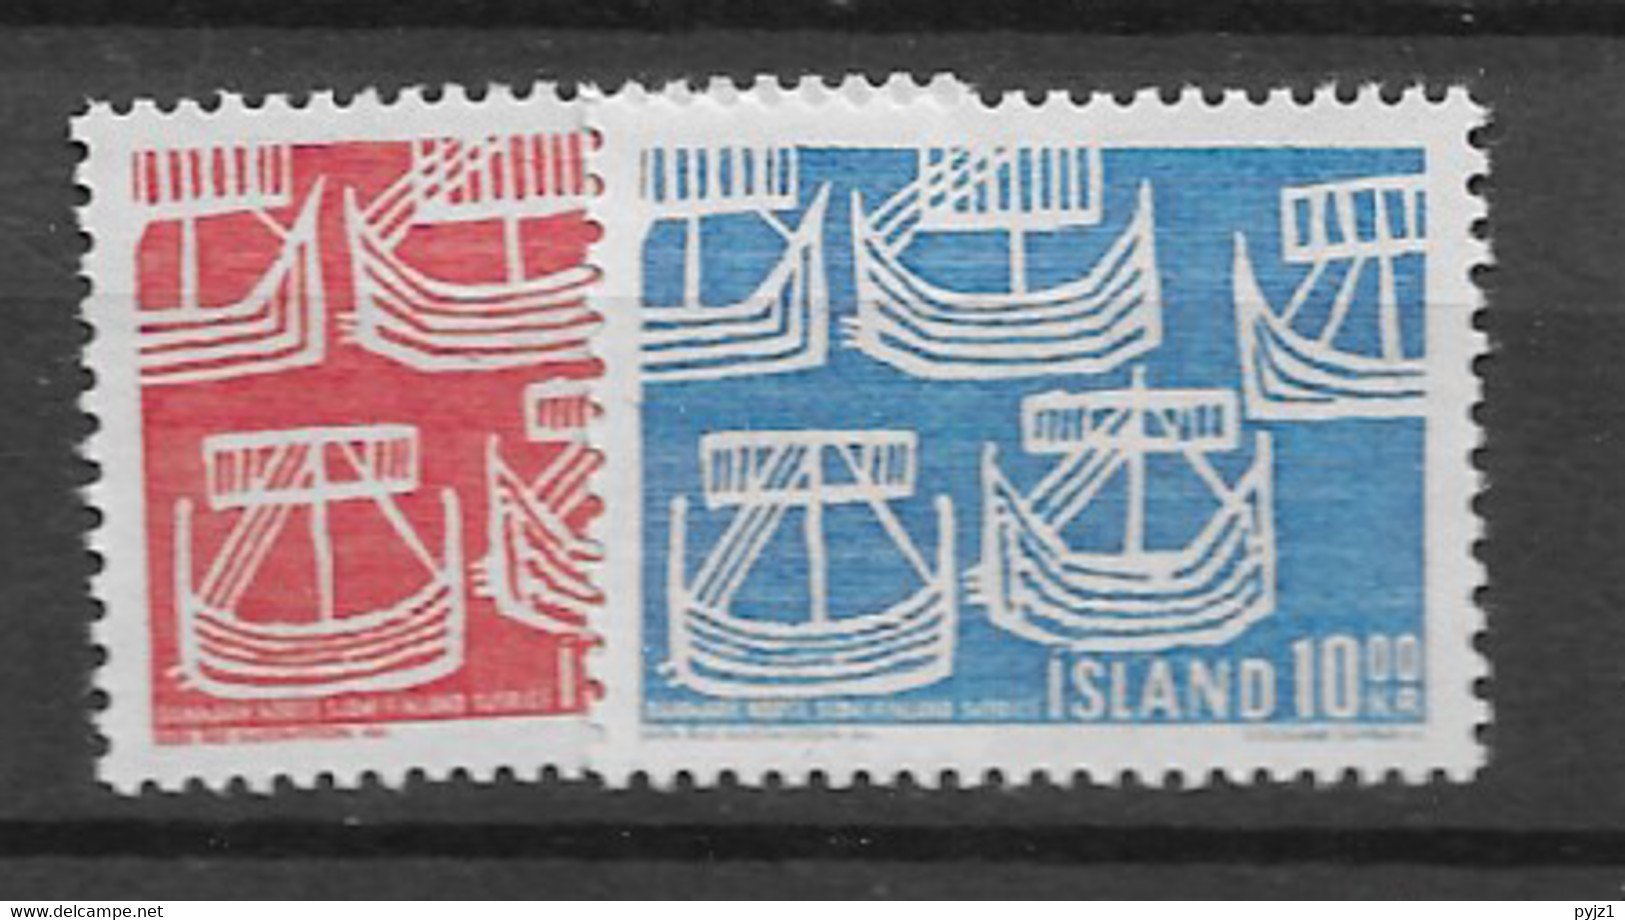 1969 MNH Iceland, Island, Mi 426-27 - Unused Stamps